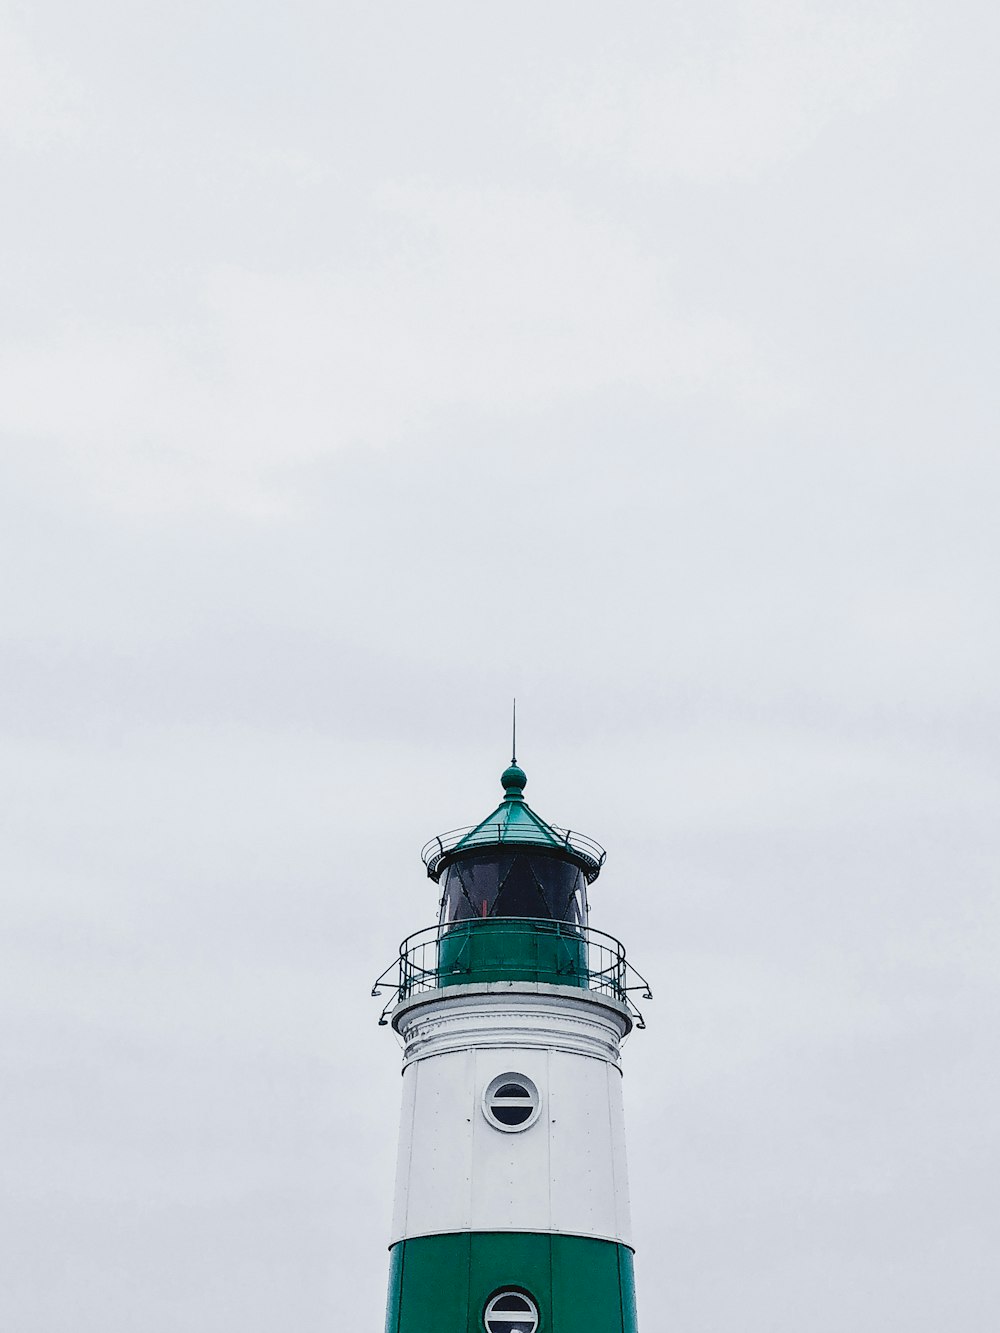 昼間の白い空の下に白と緑の灯台